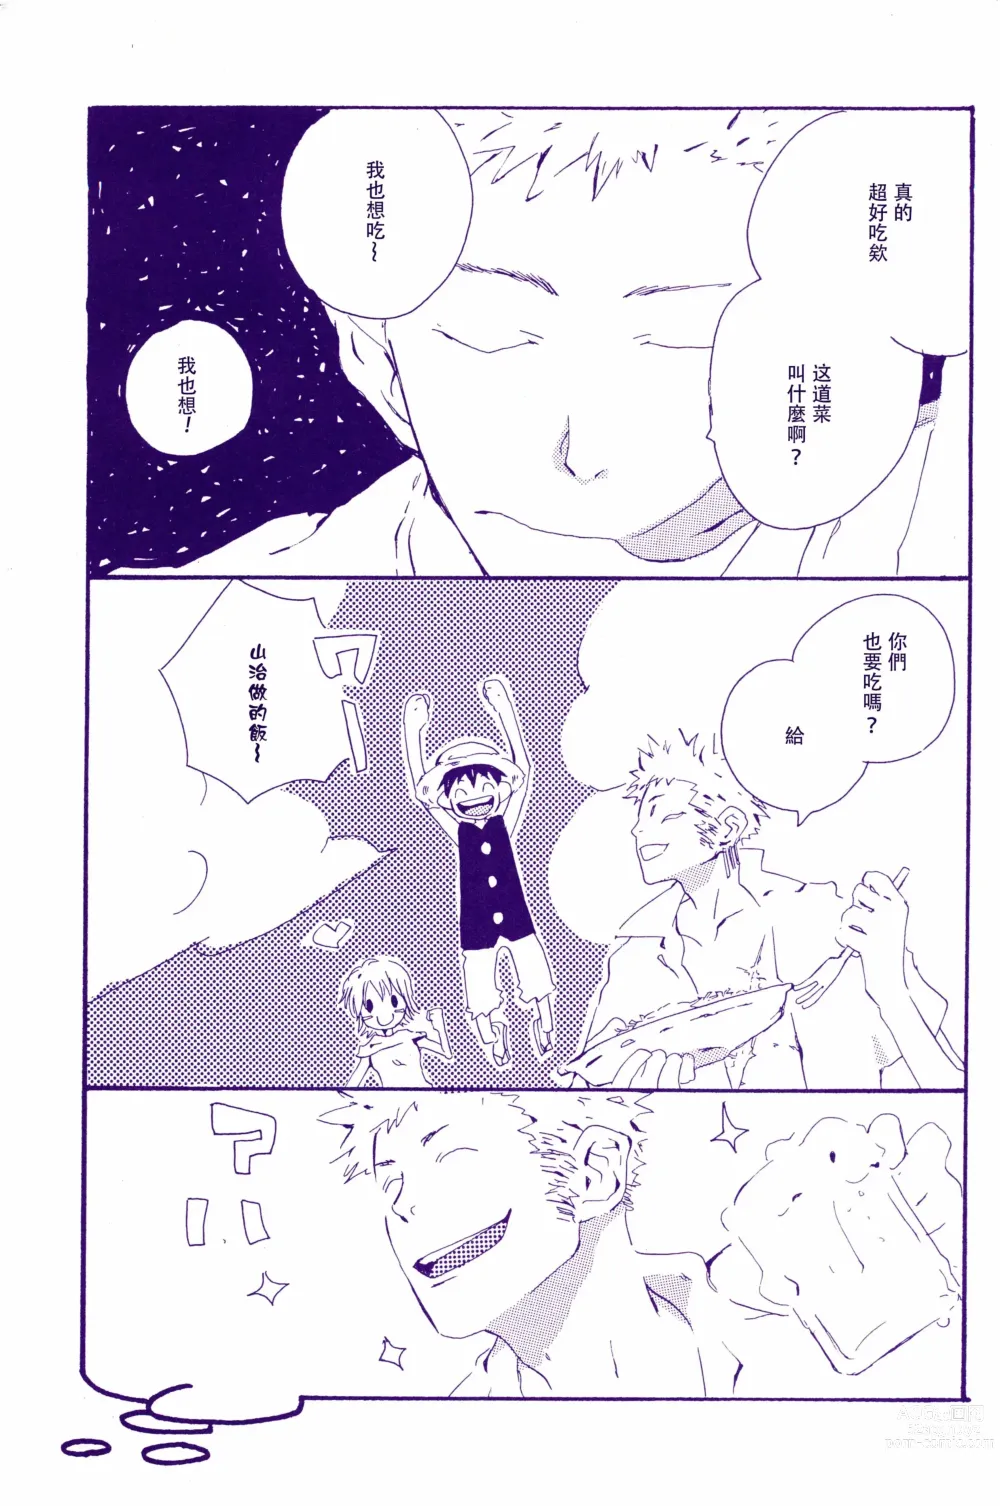 Page 4 of doujinshi 在暴风雨的夜晚 2